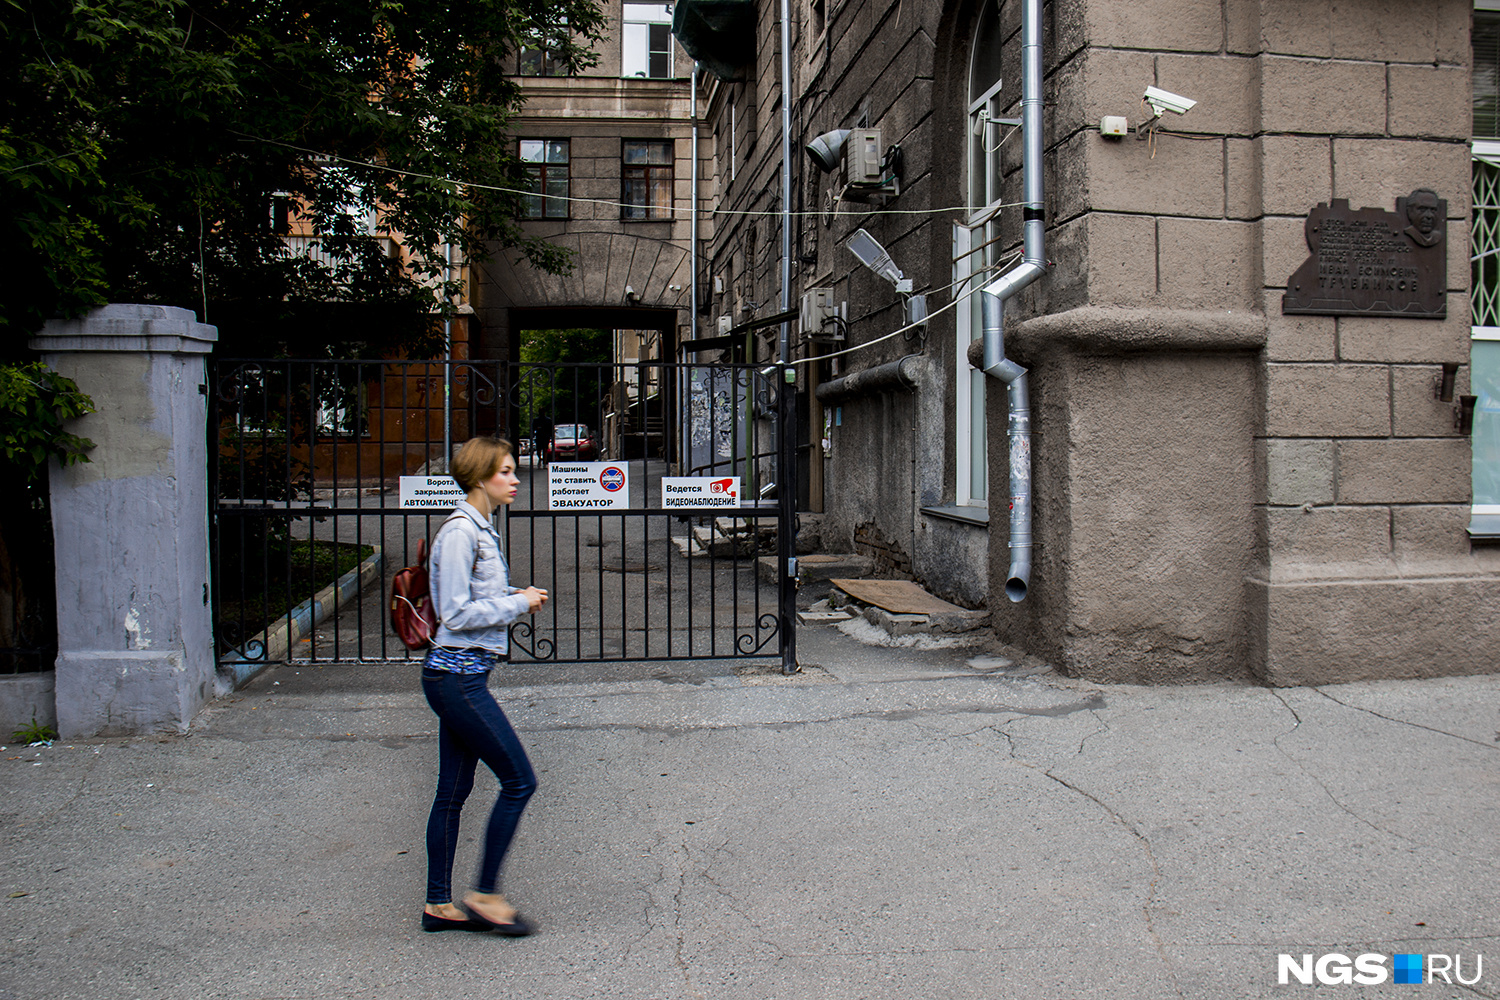 Жителей близлежащих домов особенно возмутило, что их дворы превратились в туалеты — жильцы дома по ул. Ленина, 18 решили поставить калитку, закрывающую доступ к дому